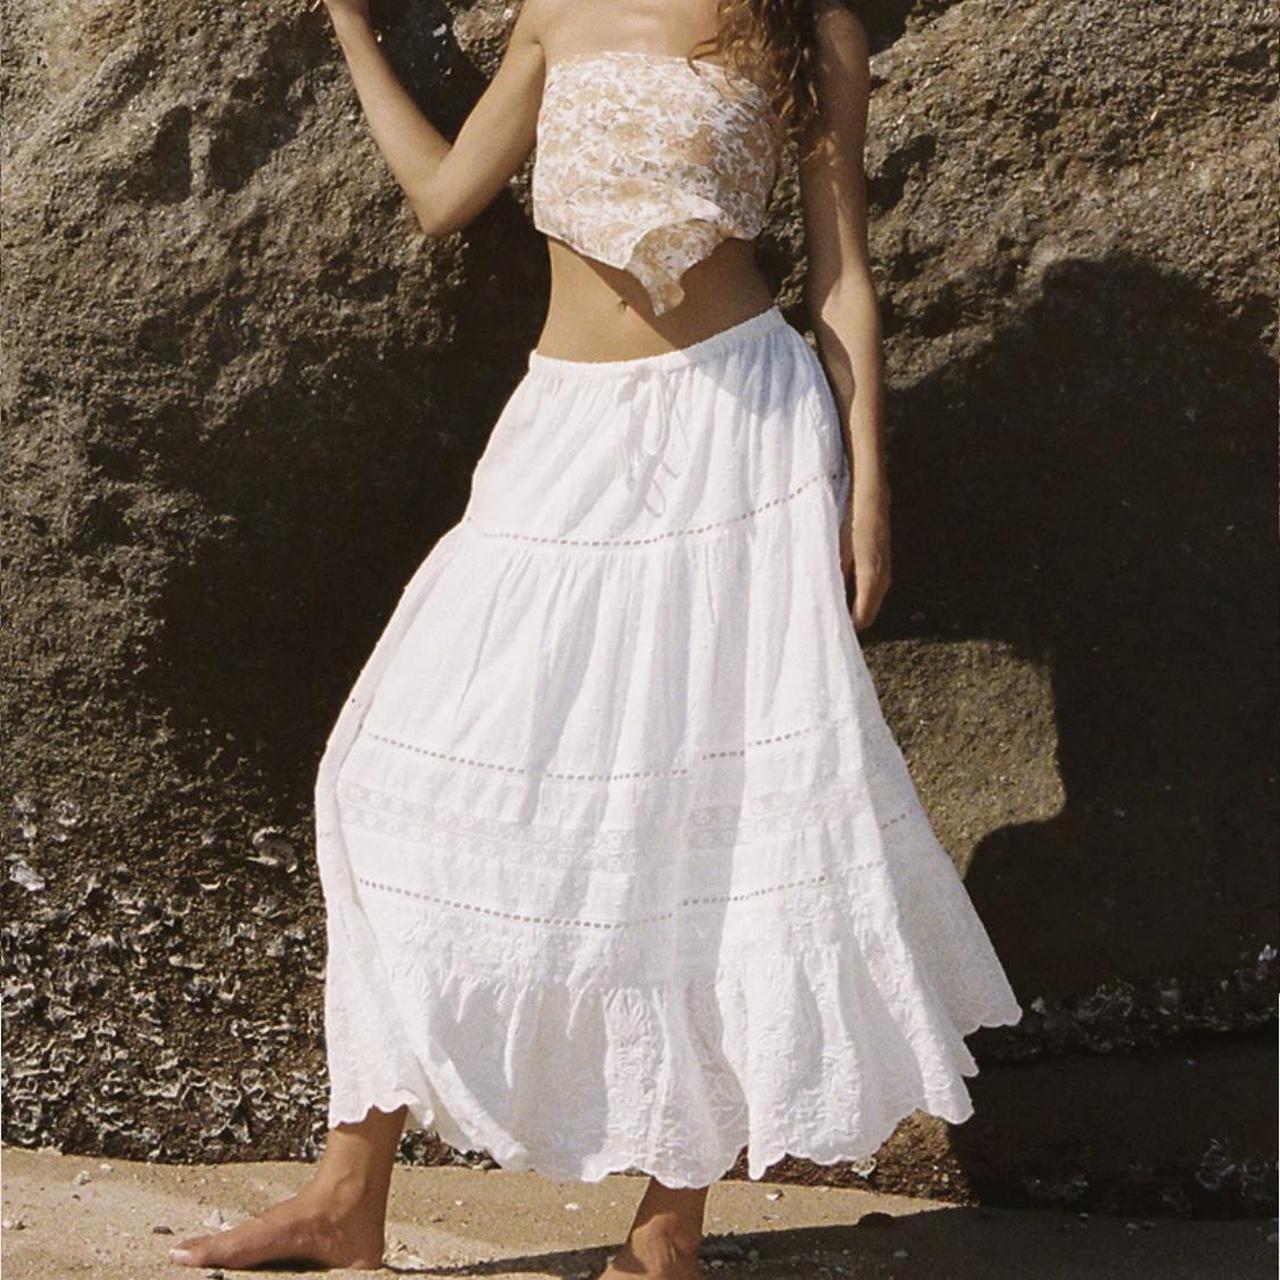 Ghanda romance maxi skirt sold out medium (for a... - Depop